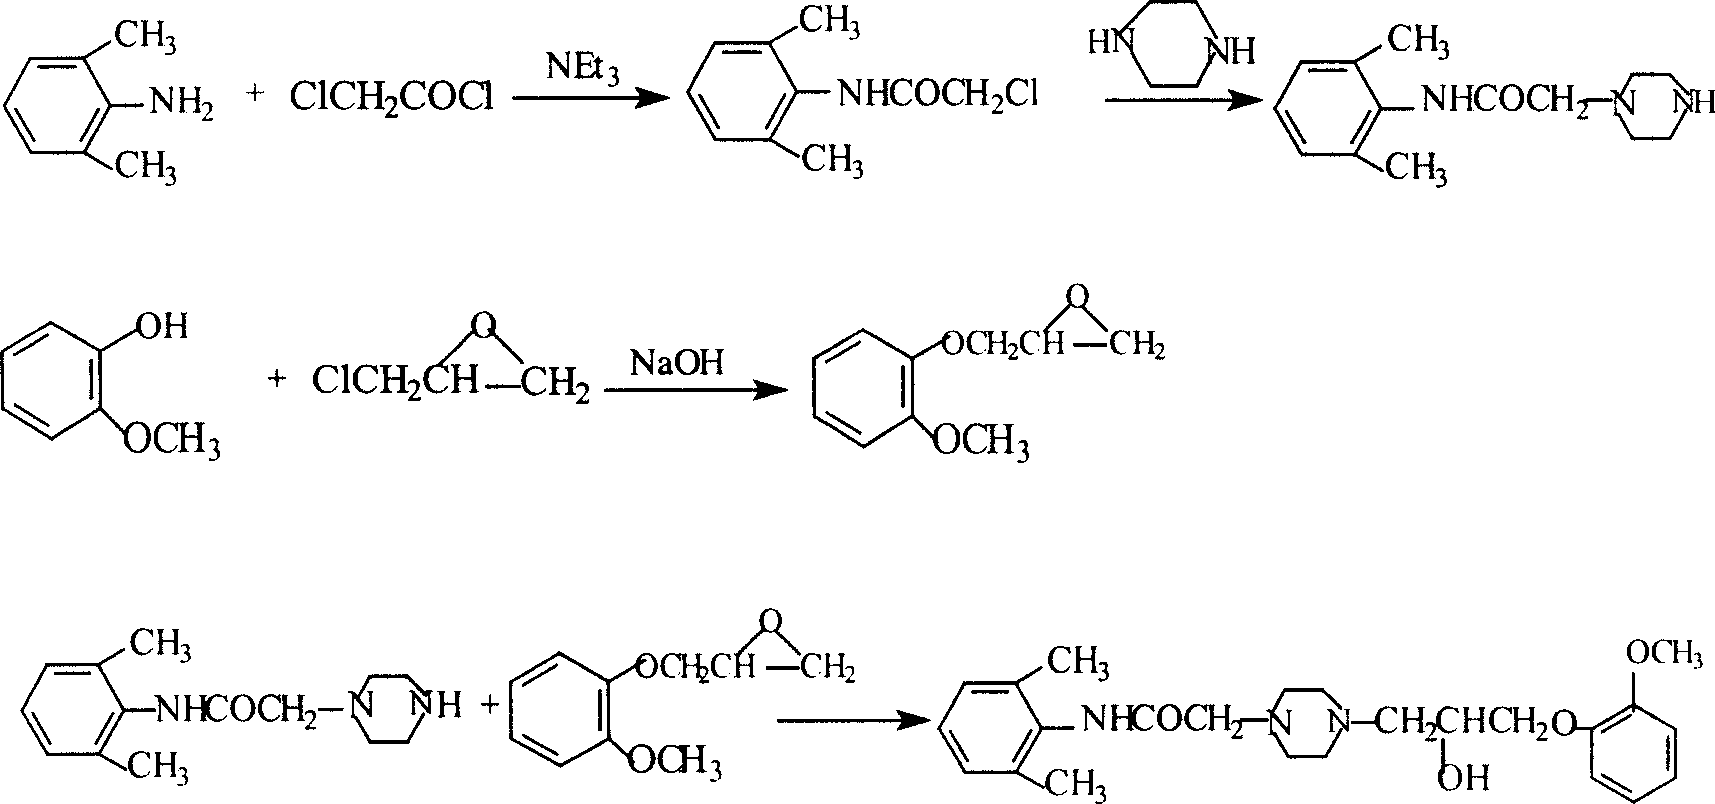 Method for synthesizing Ranolazine